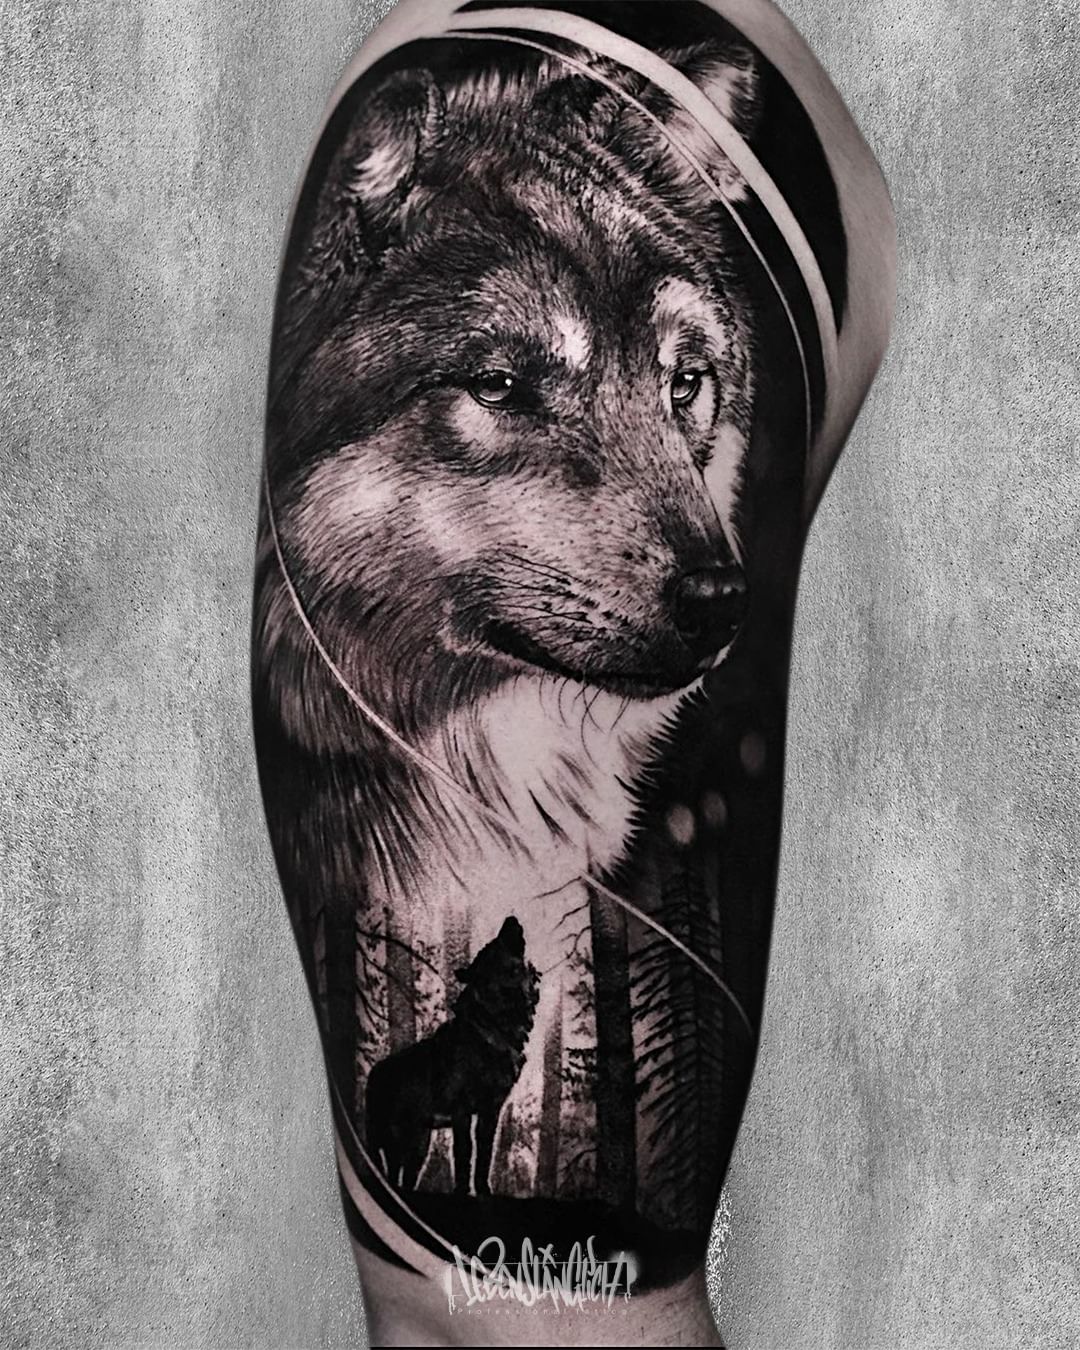 Alex Tattoo Austria  WolfHand by Alex tattoo tattooed tattoolove wolf  handtattoo ink inked inklove tattoostudio tattoos art portrait  realistic realistictattoo alextattooaustria  Facebook